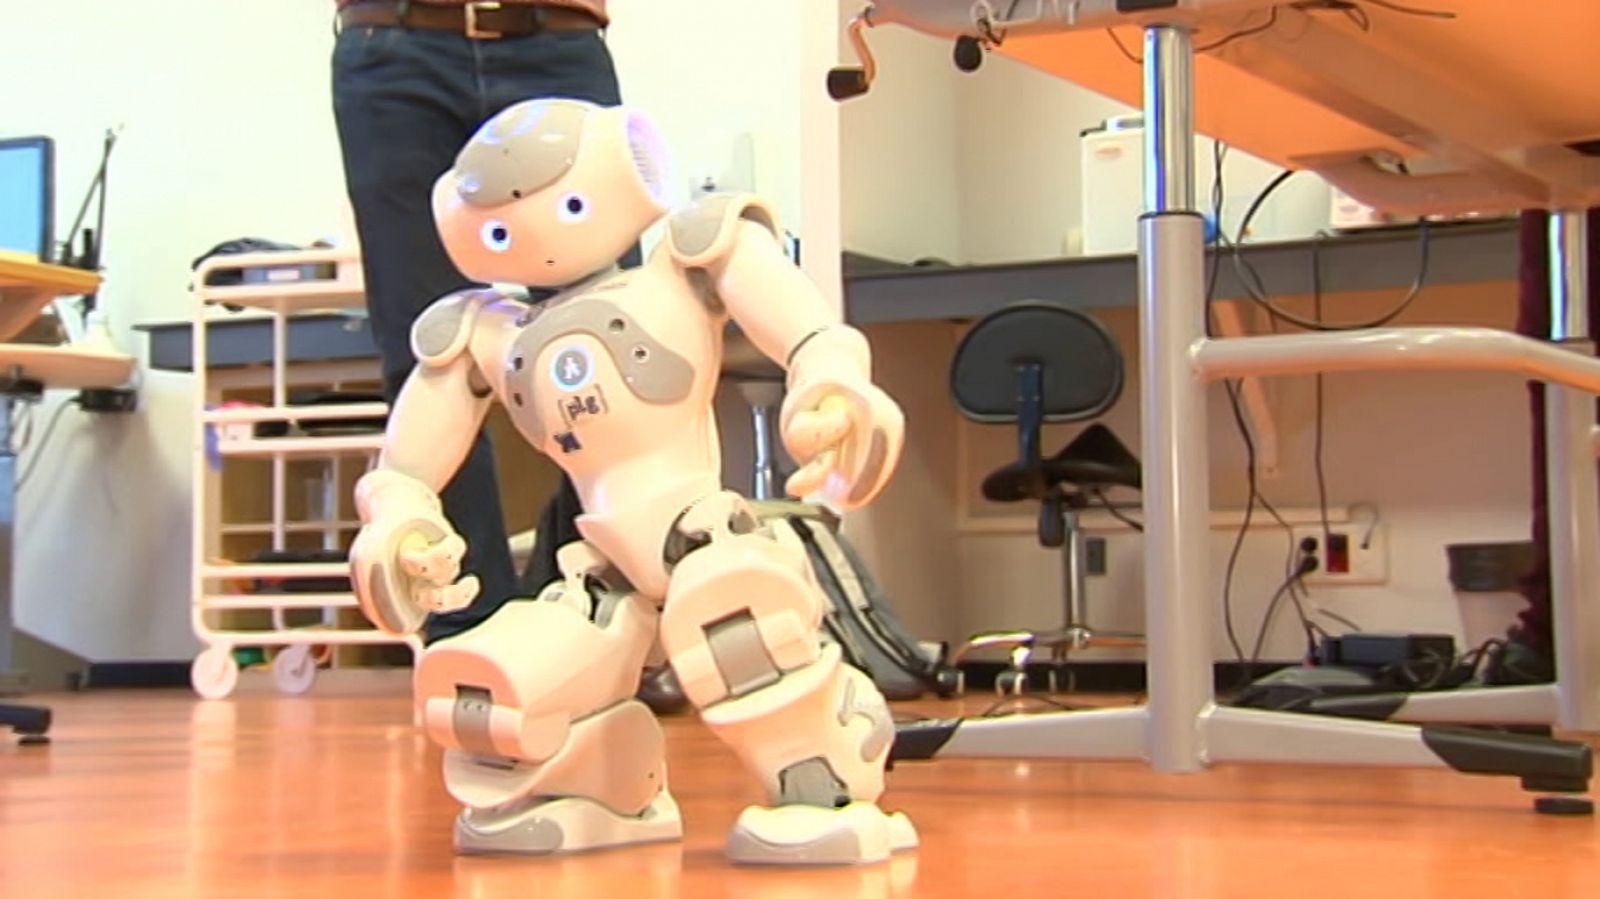 Lab24 - Rehabilitación robótica y Programados para durar - ver ahora